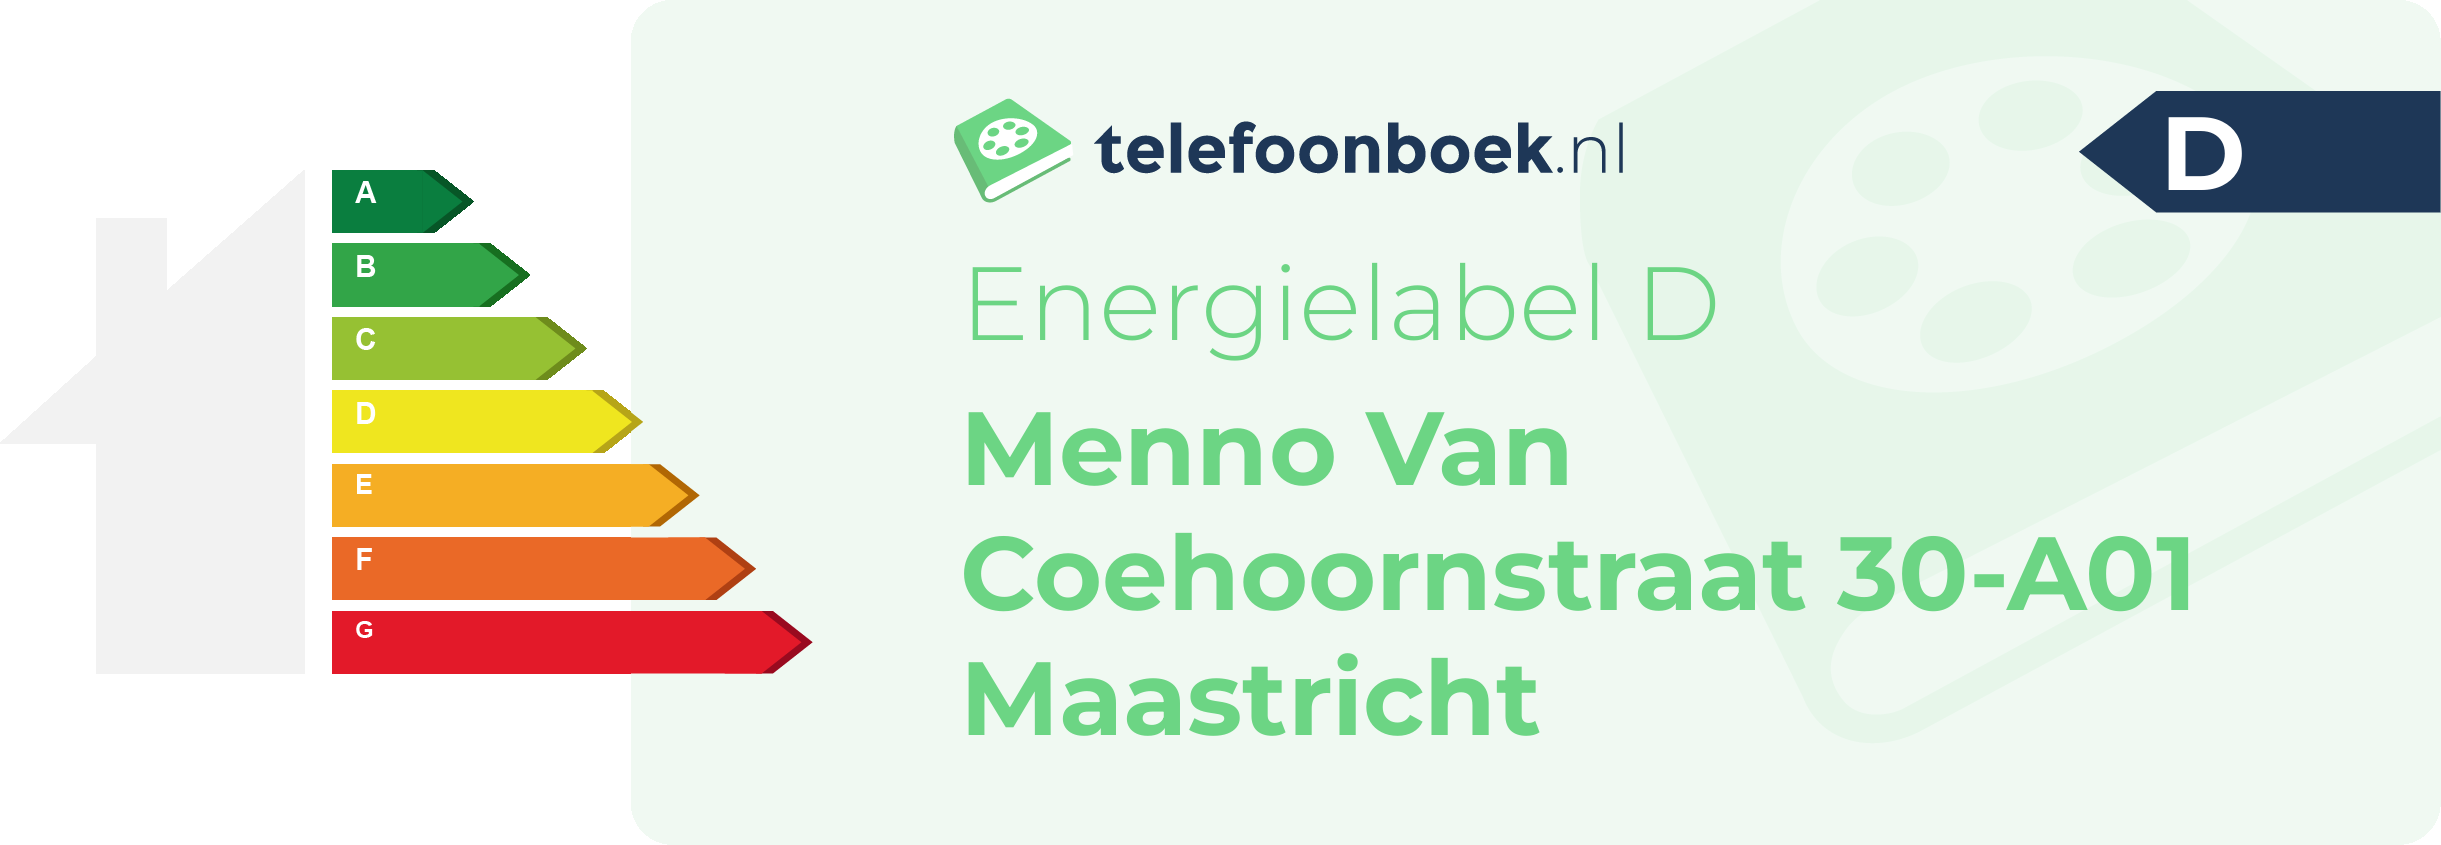 Energielabel Menno Van Coehoornstraat 30-A01 Maastricht